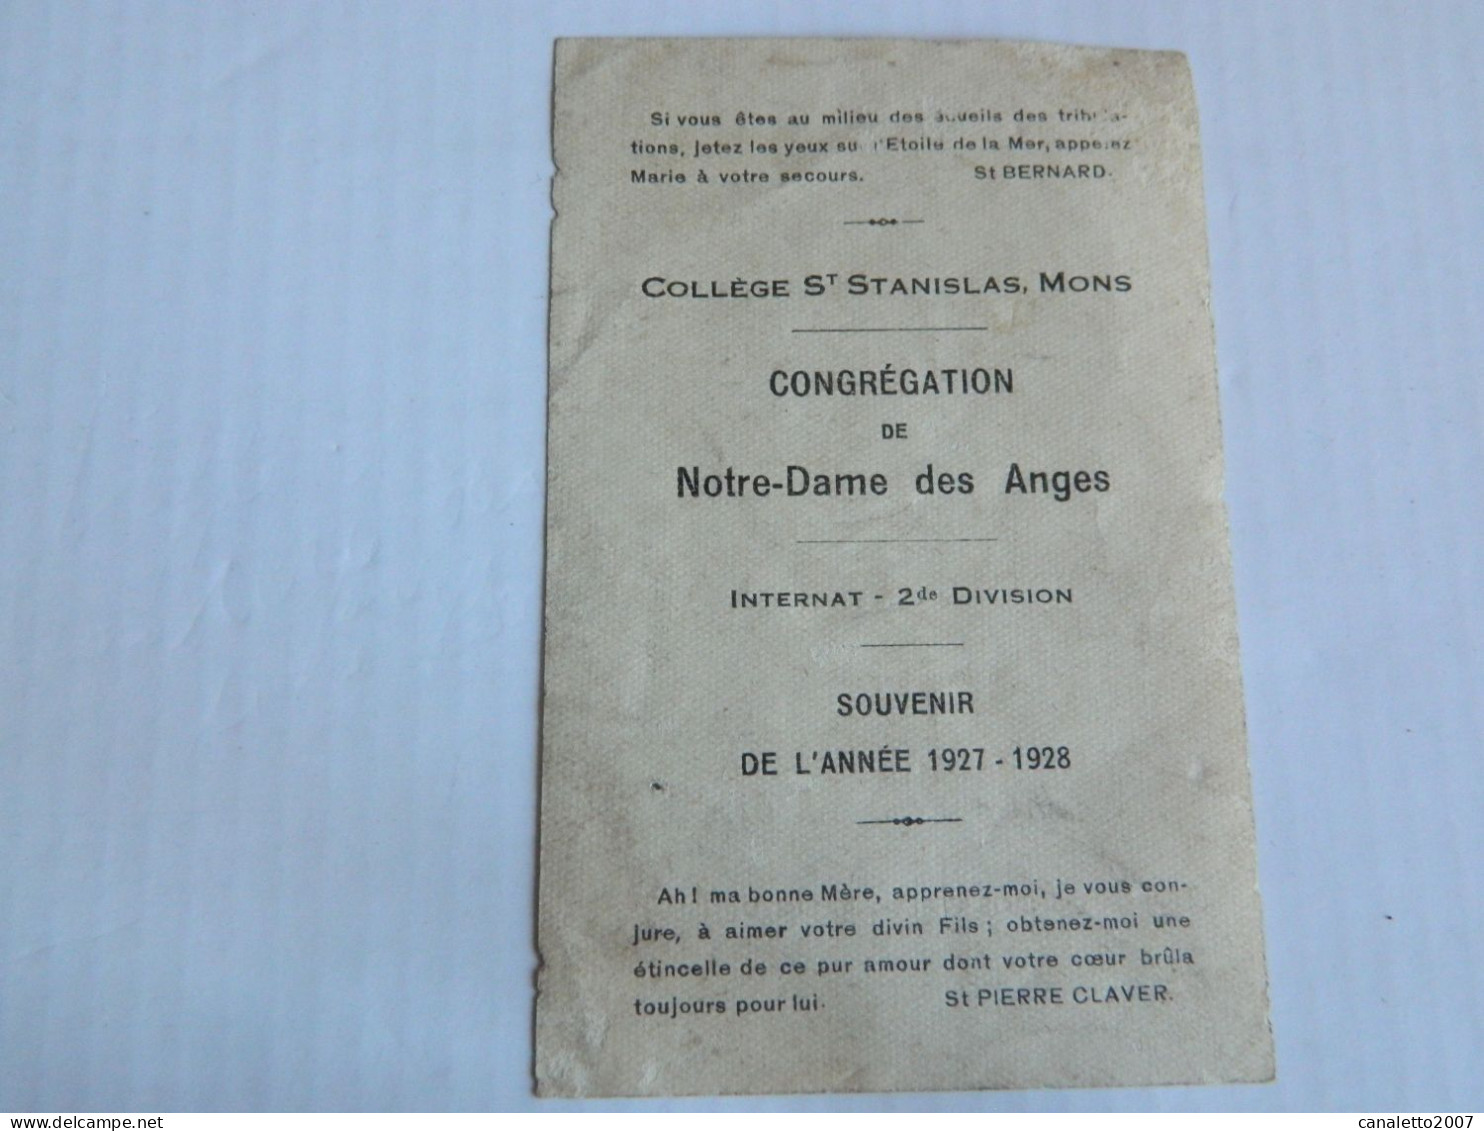 MONS: COLLEGE ST STANISLAS CONGREGATION DE N-D DES ANGES INTERNAT 2 ME DIVISION SOUVENIR DE L'ANNEE 1927/1928 - Devotion Images